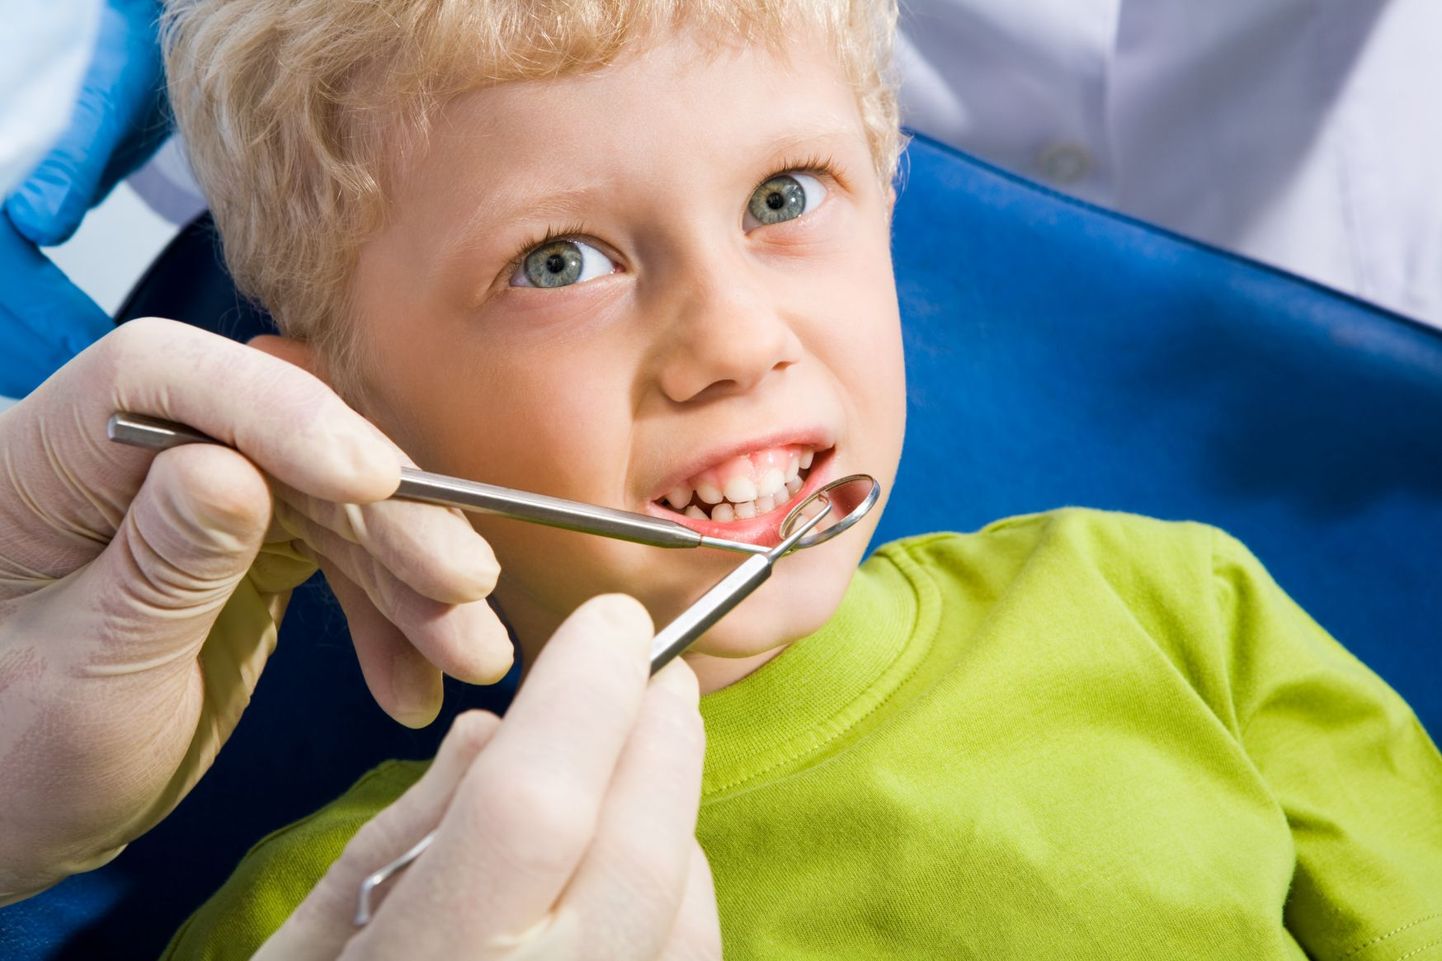 Halb suuhügieen võib viia hambaaukude tekkimiseni.